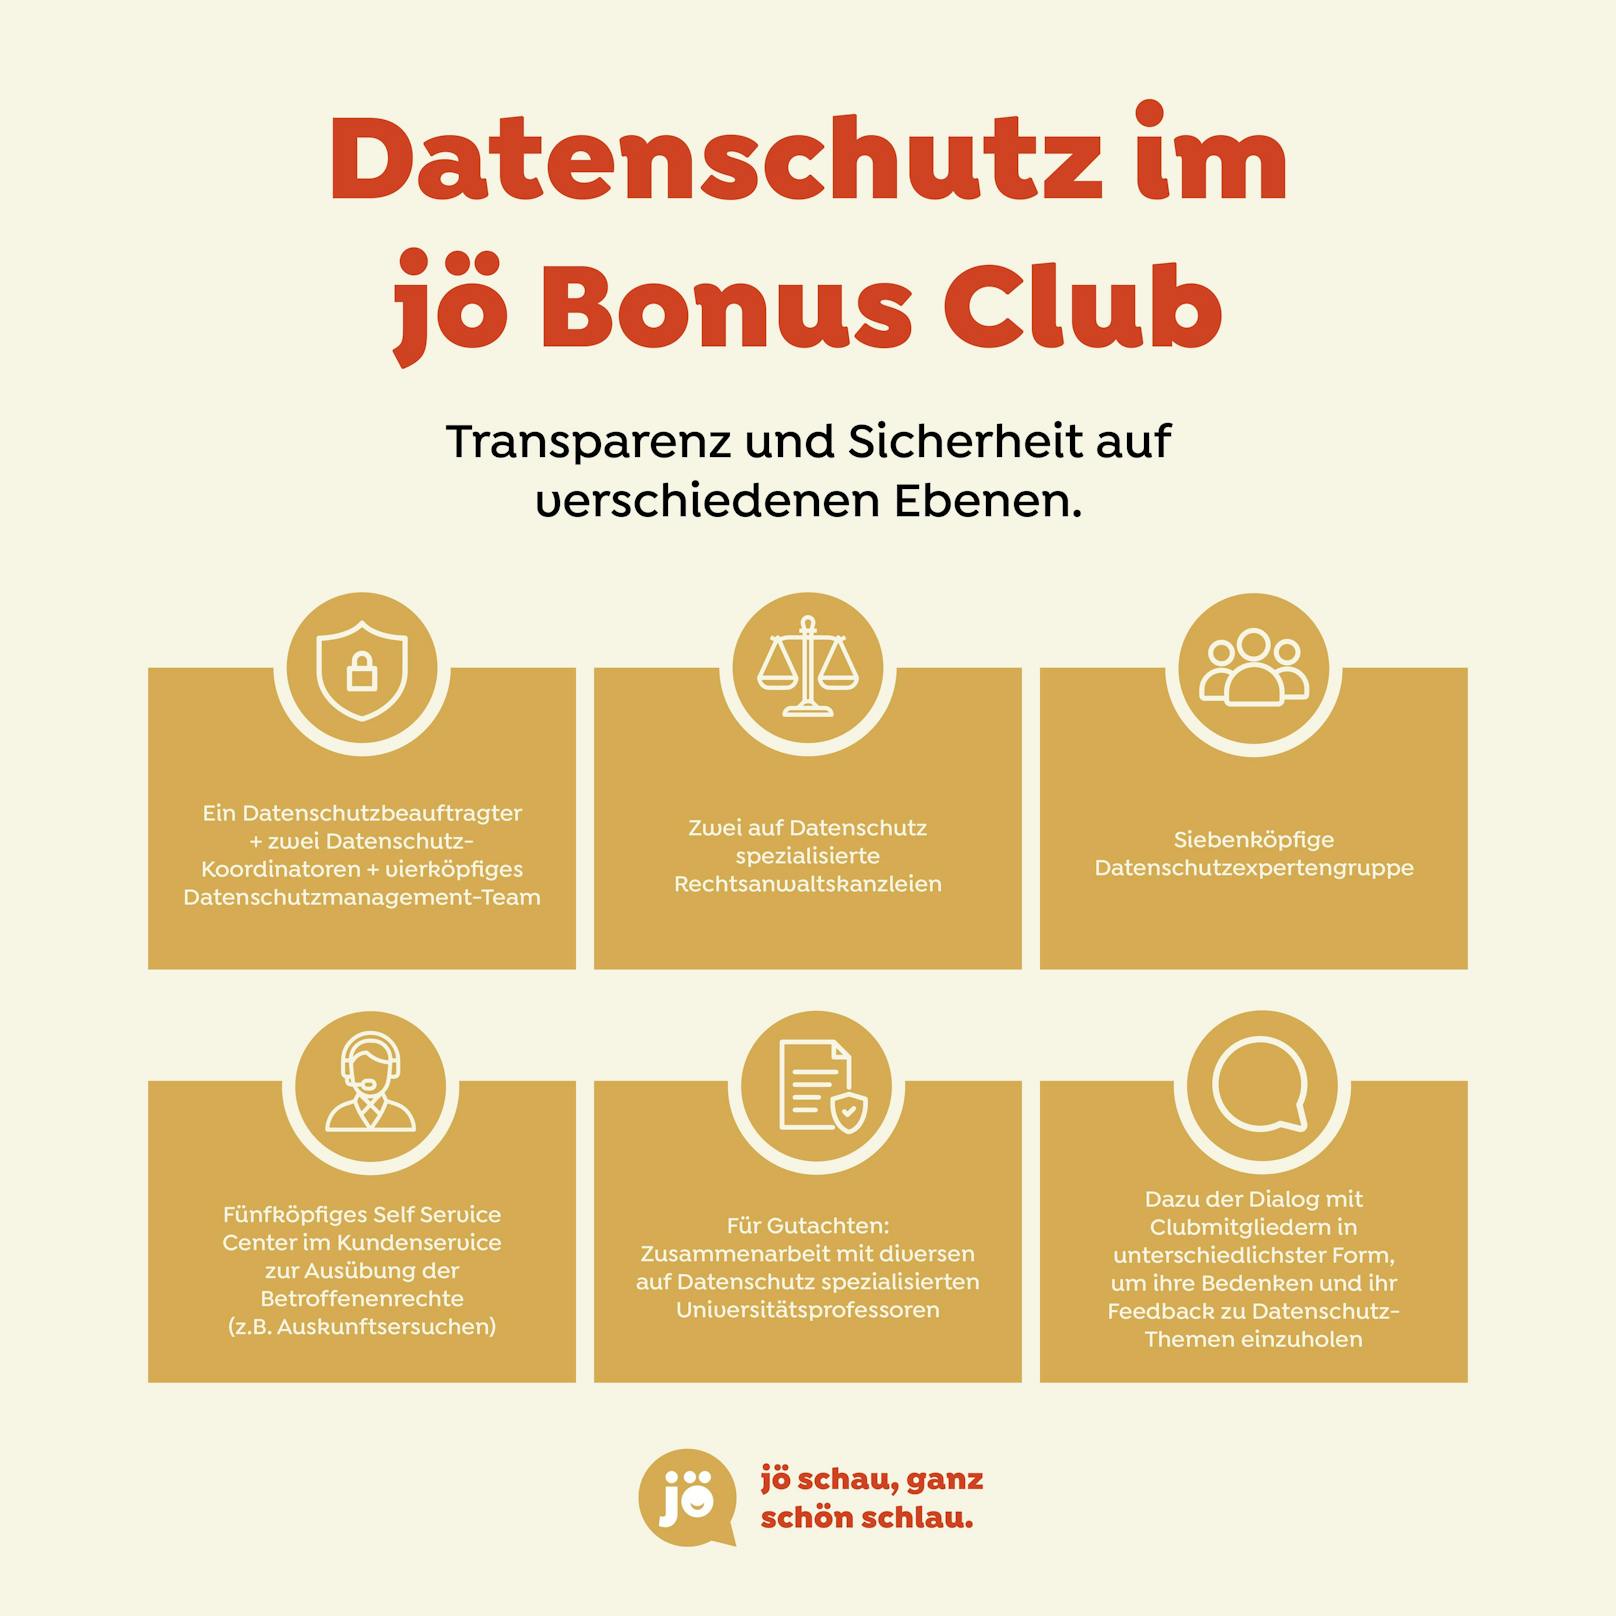 Datenschutz im "jö Bonus Club"